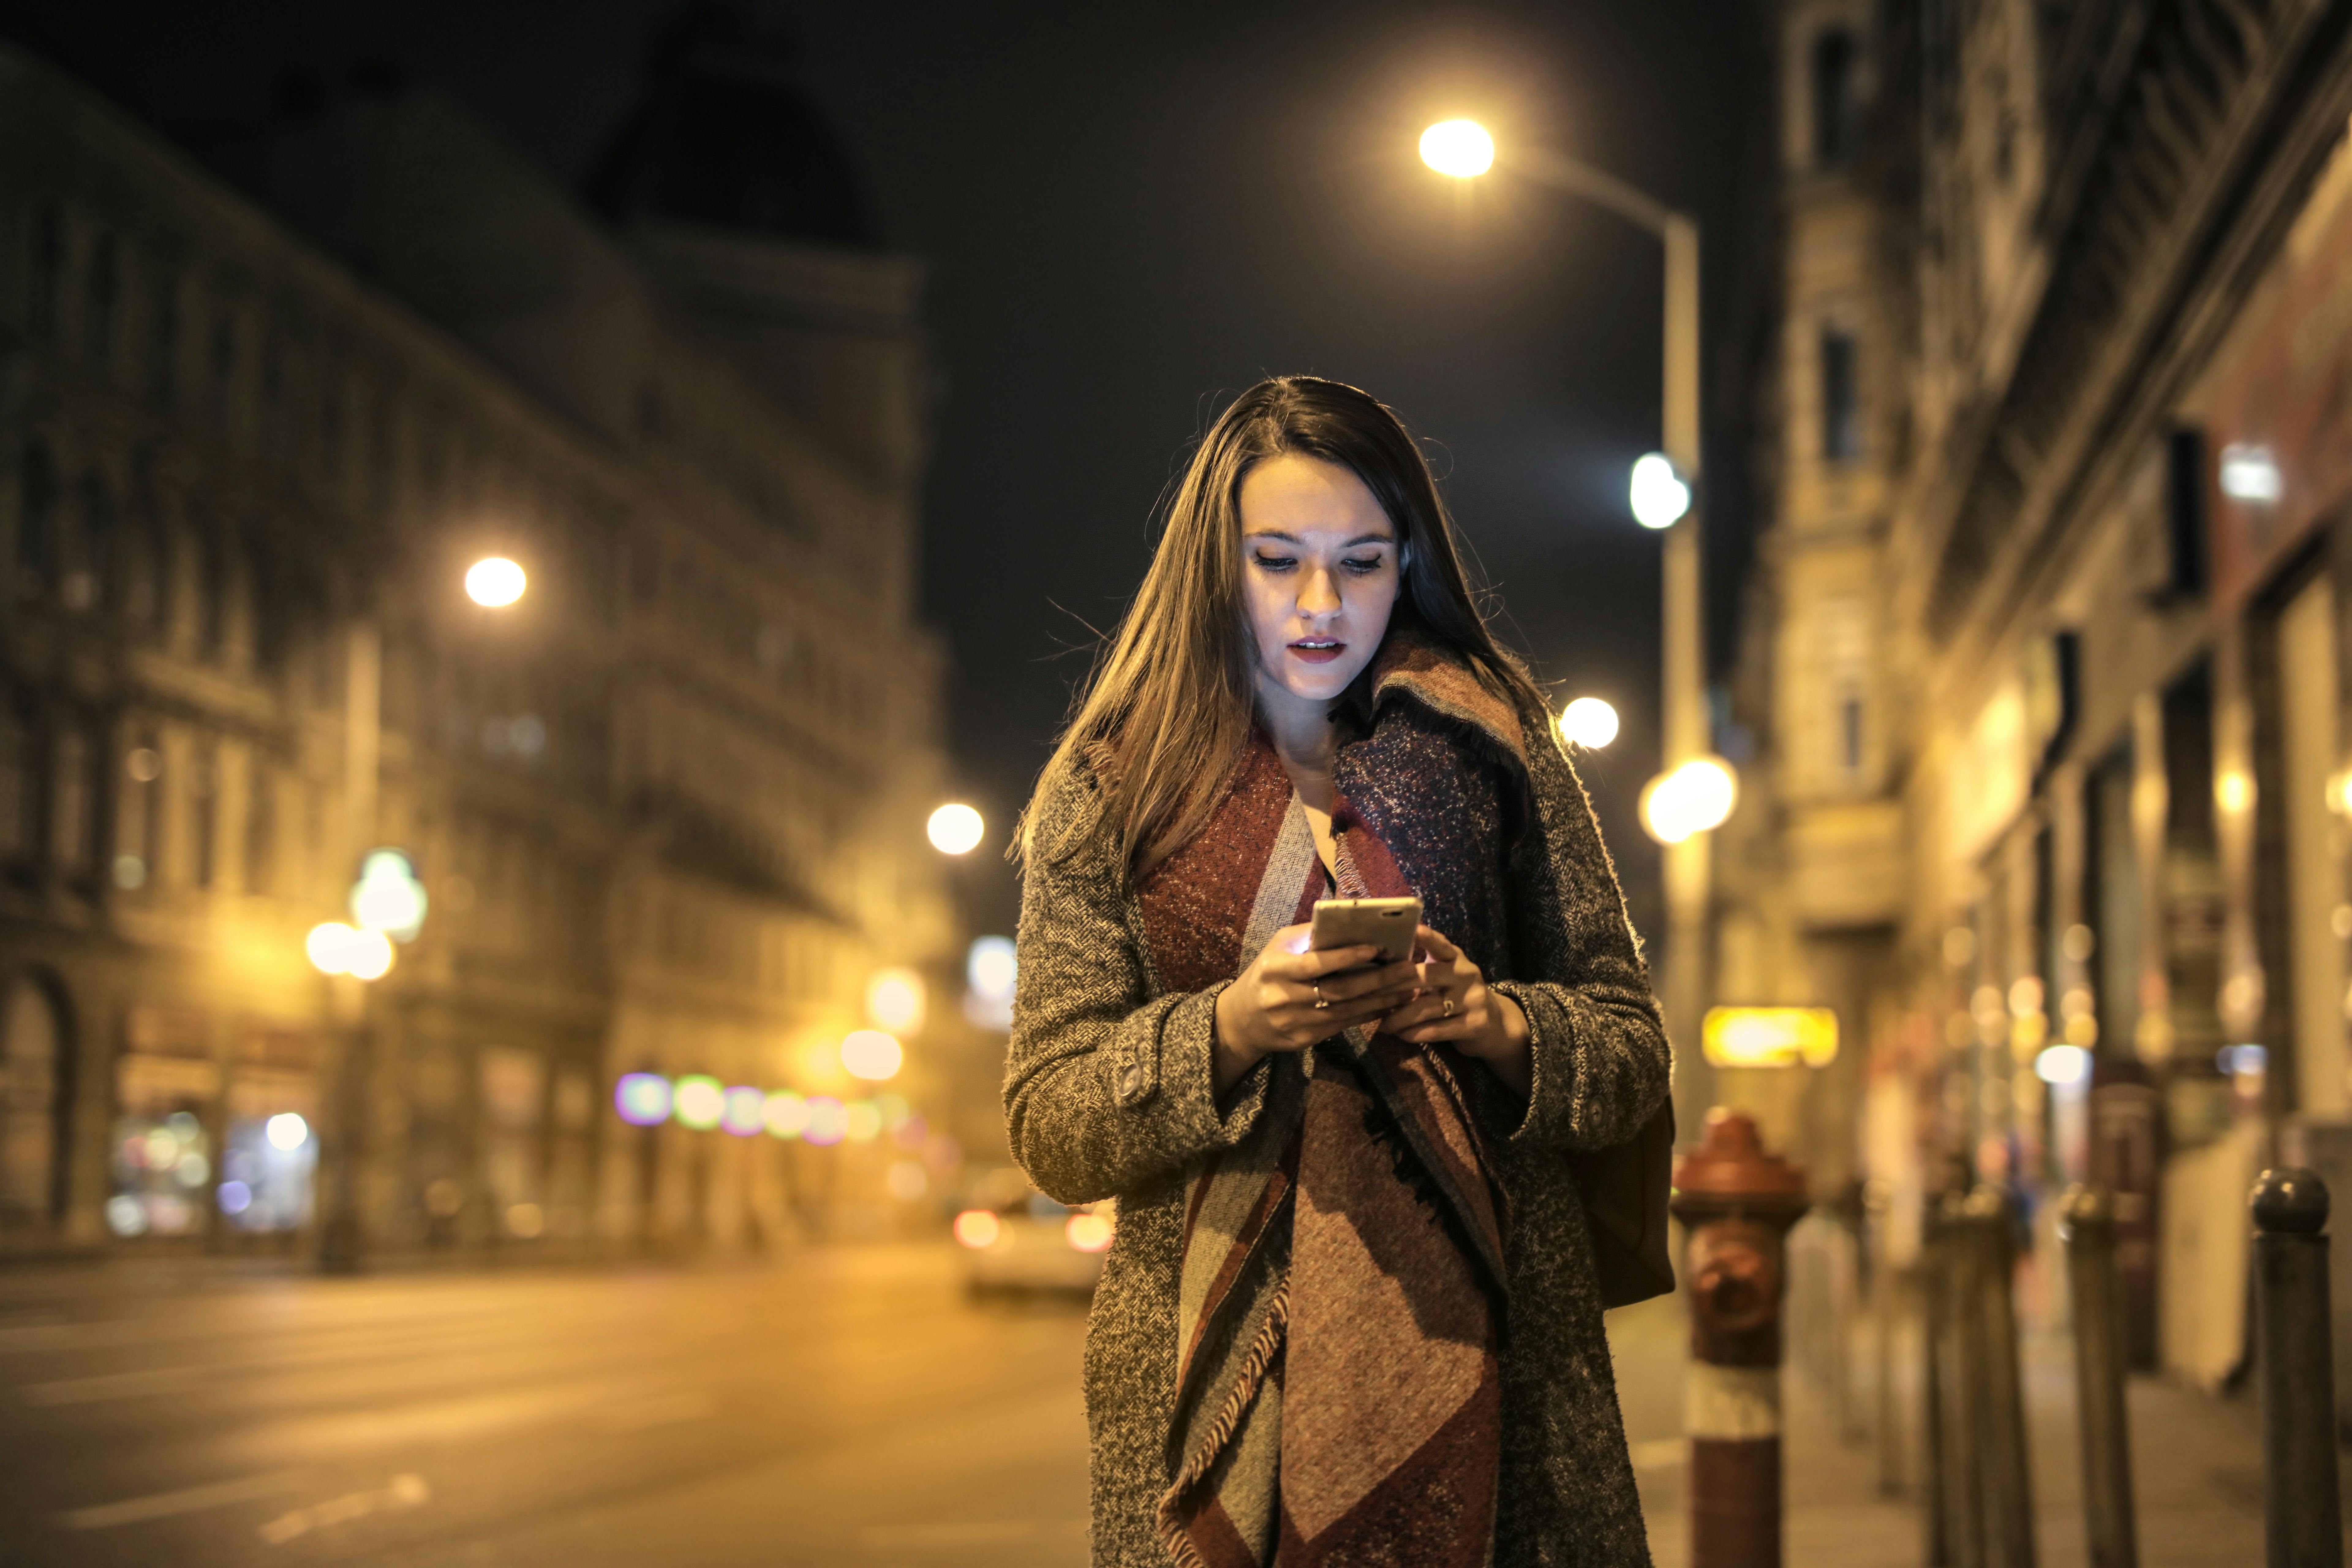 Une femme en train de regarder son téléphone portable au milieu d'une rue | Source : Pexels